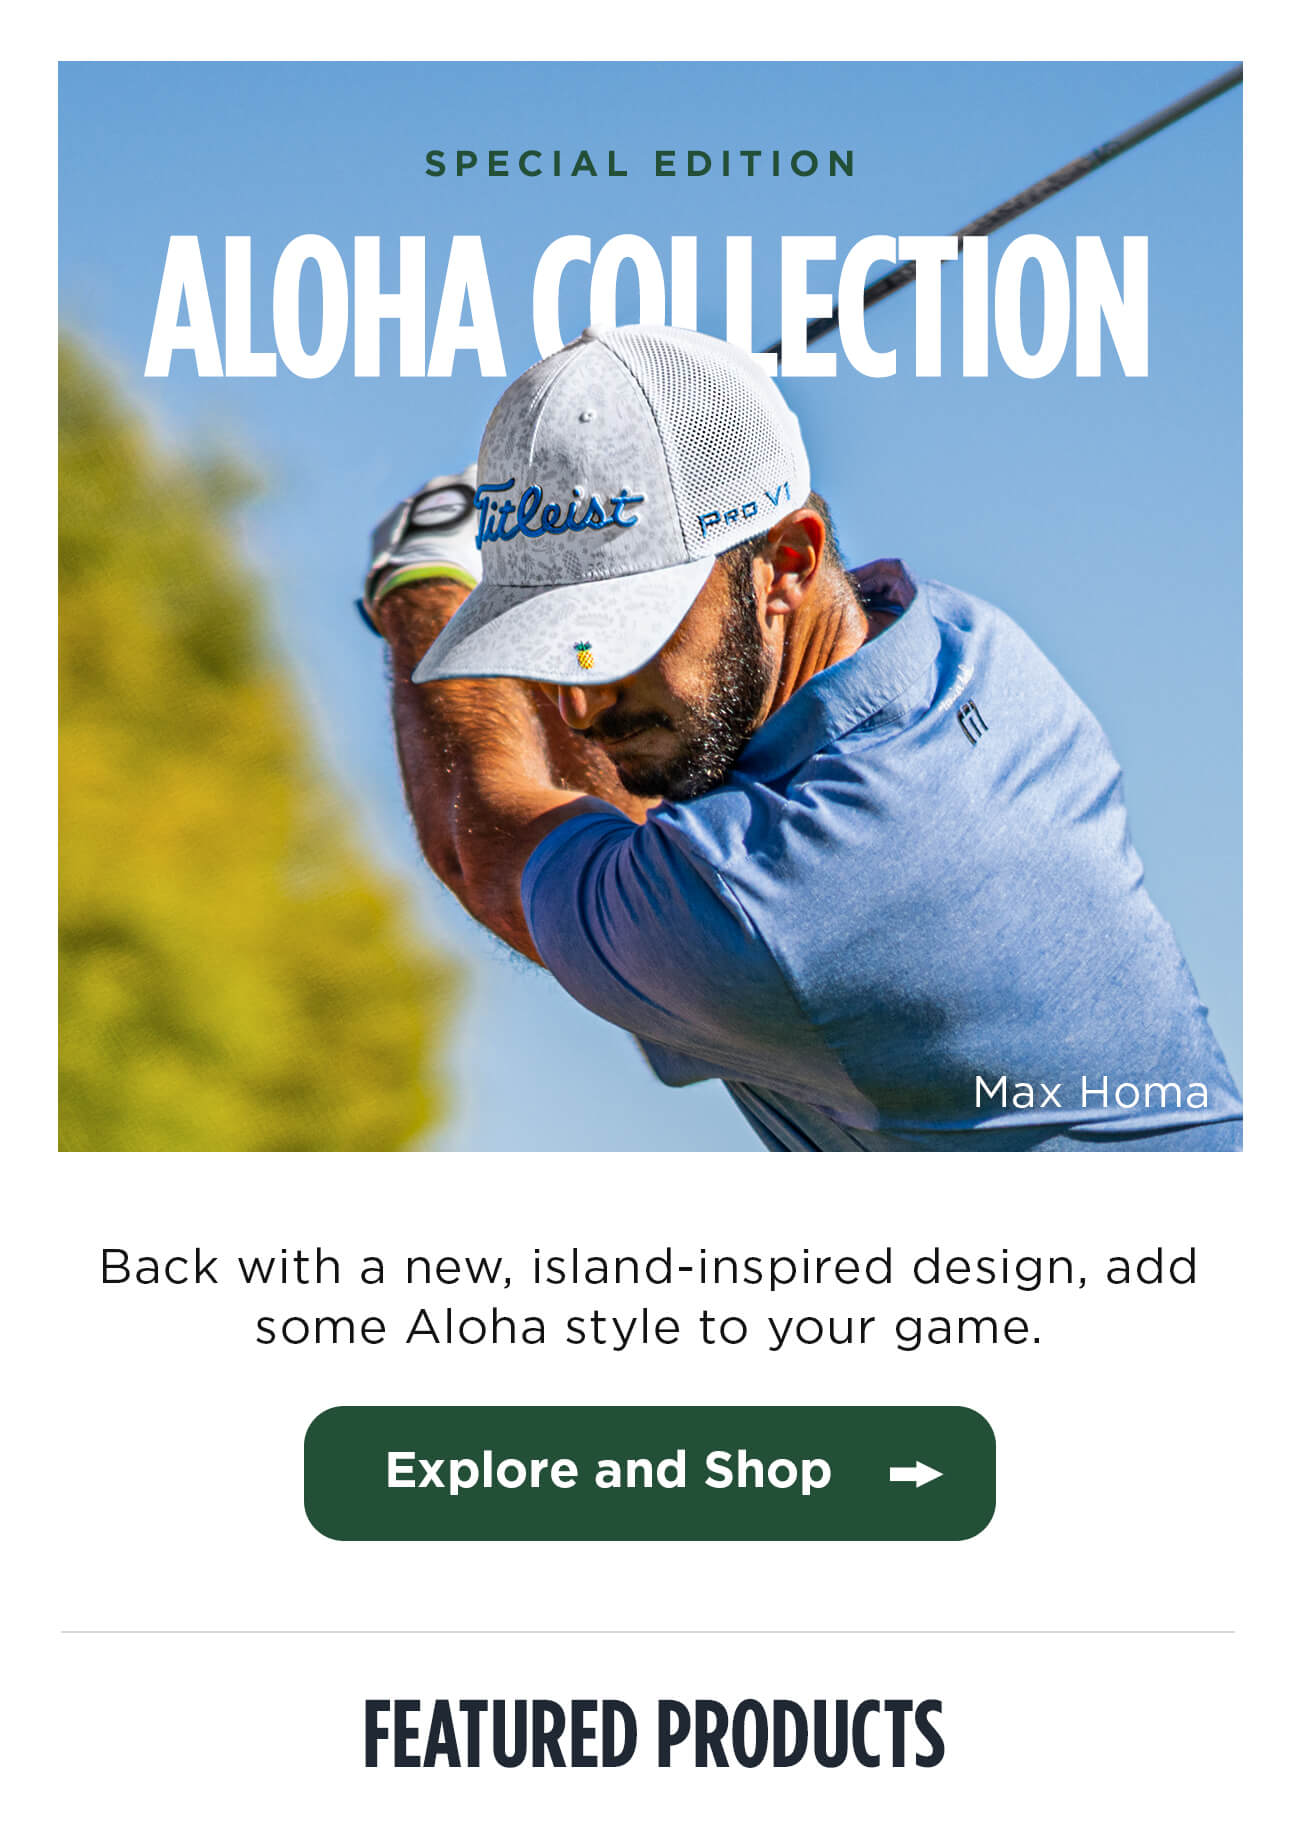 Explore the 2020 Aloha Gear Collection